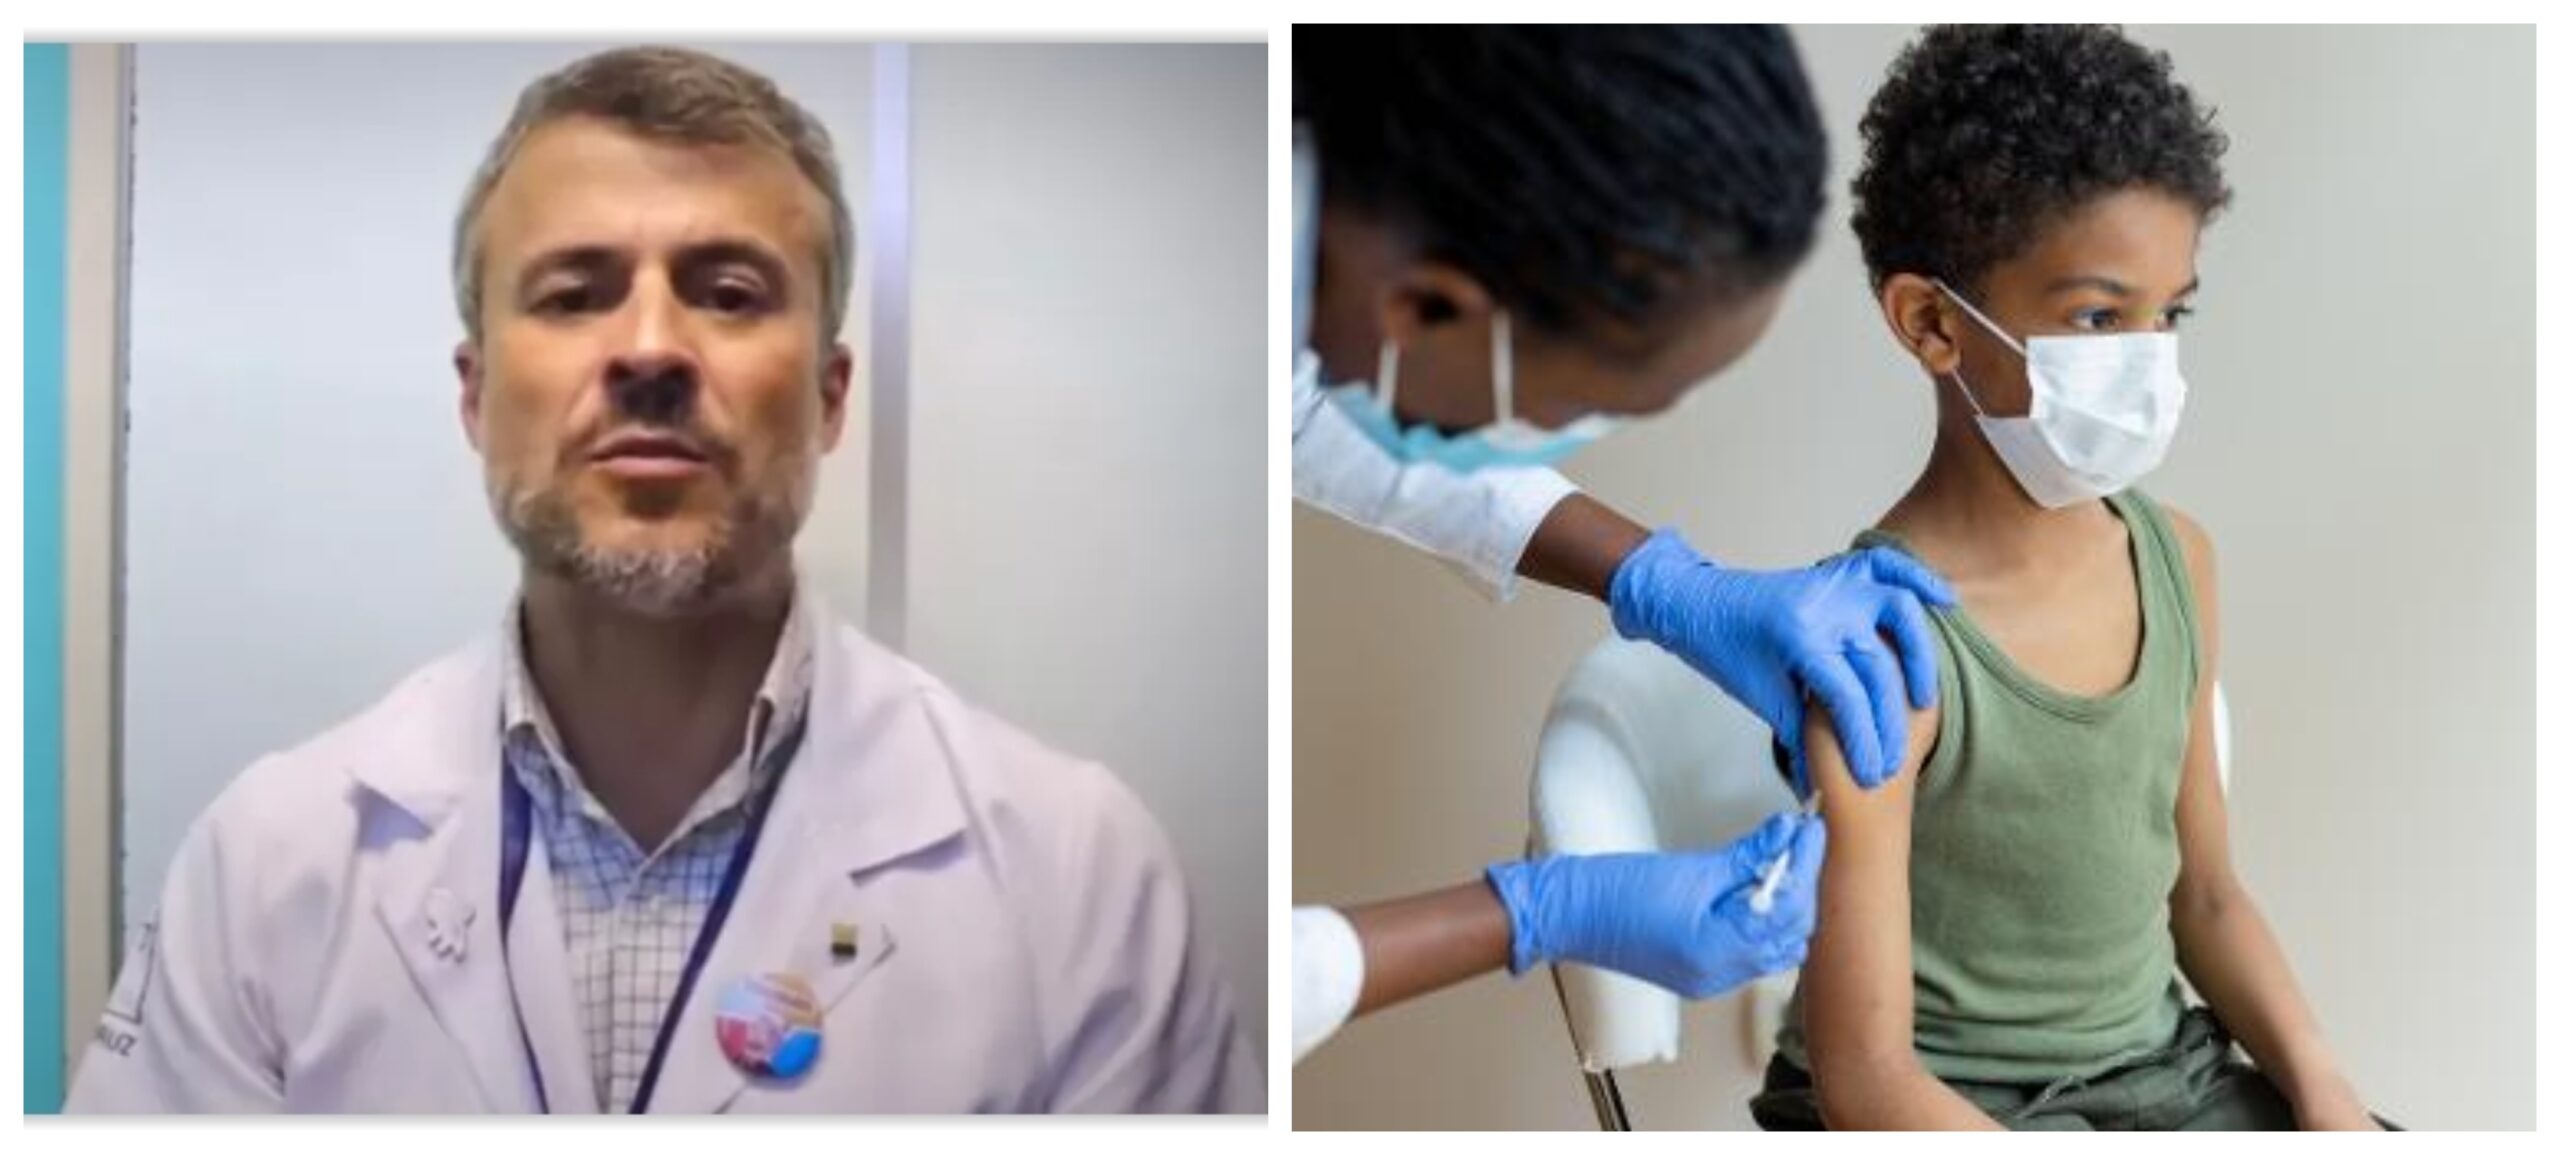 Médico da Fiocruz, diante do aumento de casos de covid: ‘Vamos começar atrasado a vacinar crianças, em uma negação inacreditável da ciência’